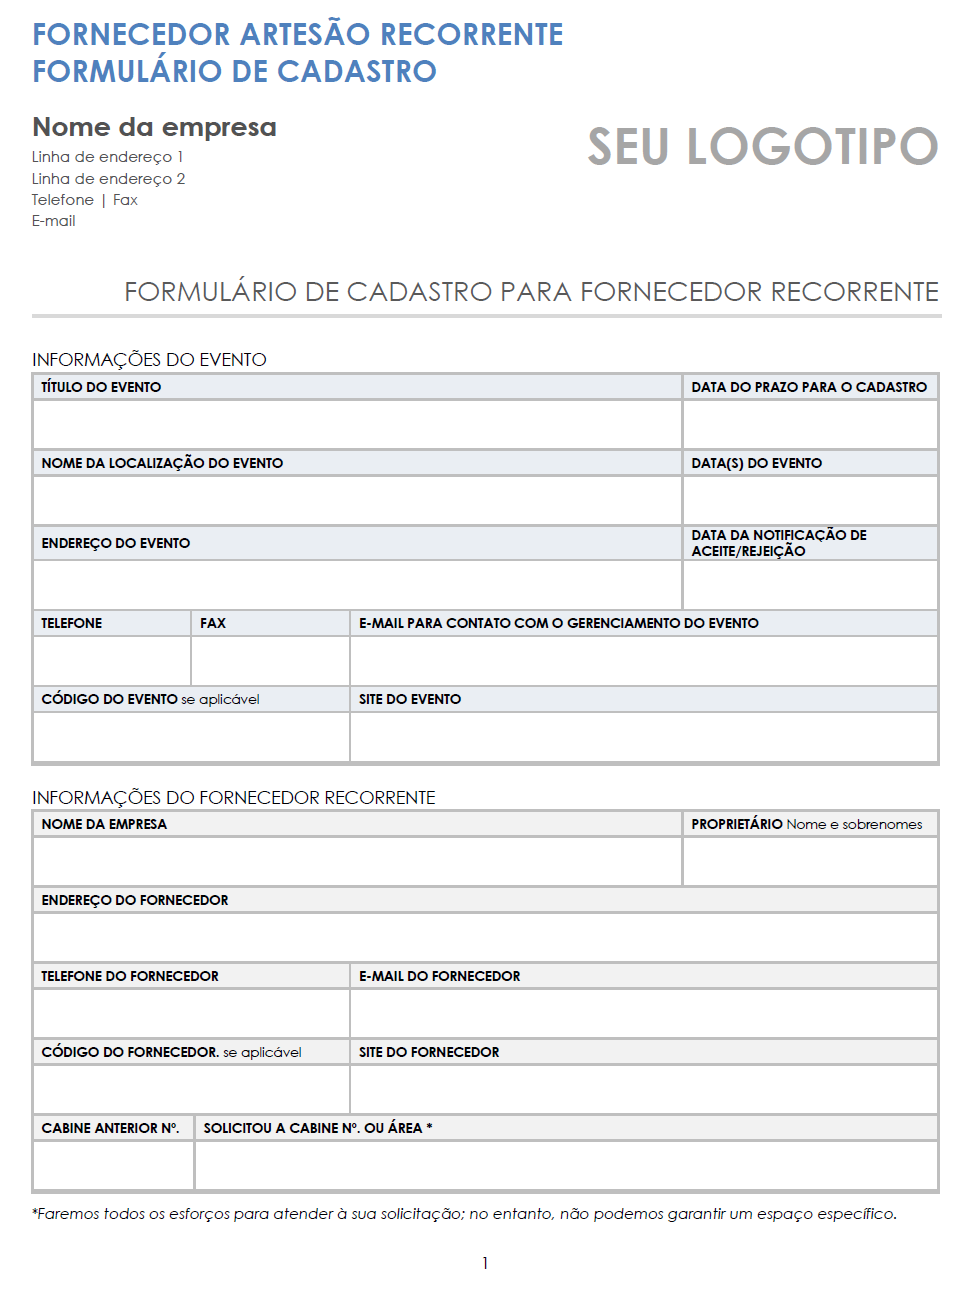 modelo de formulário de inscrição para fornecedor de artesão que retorna